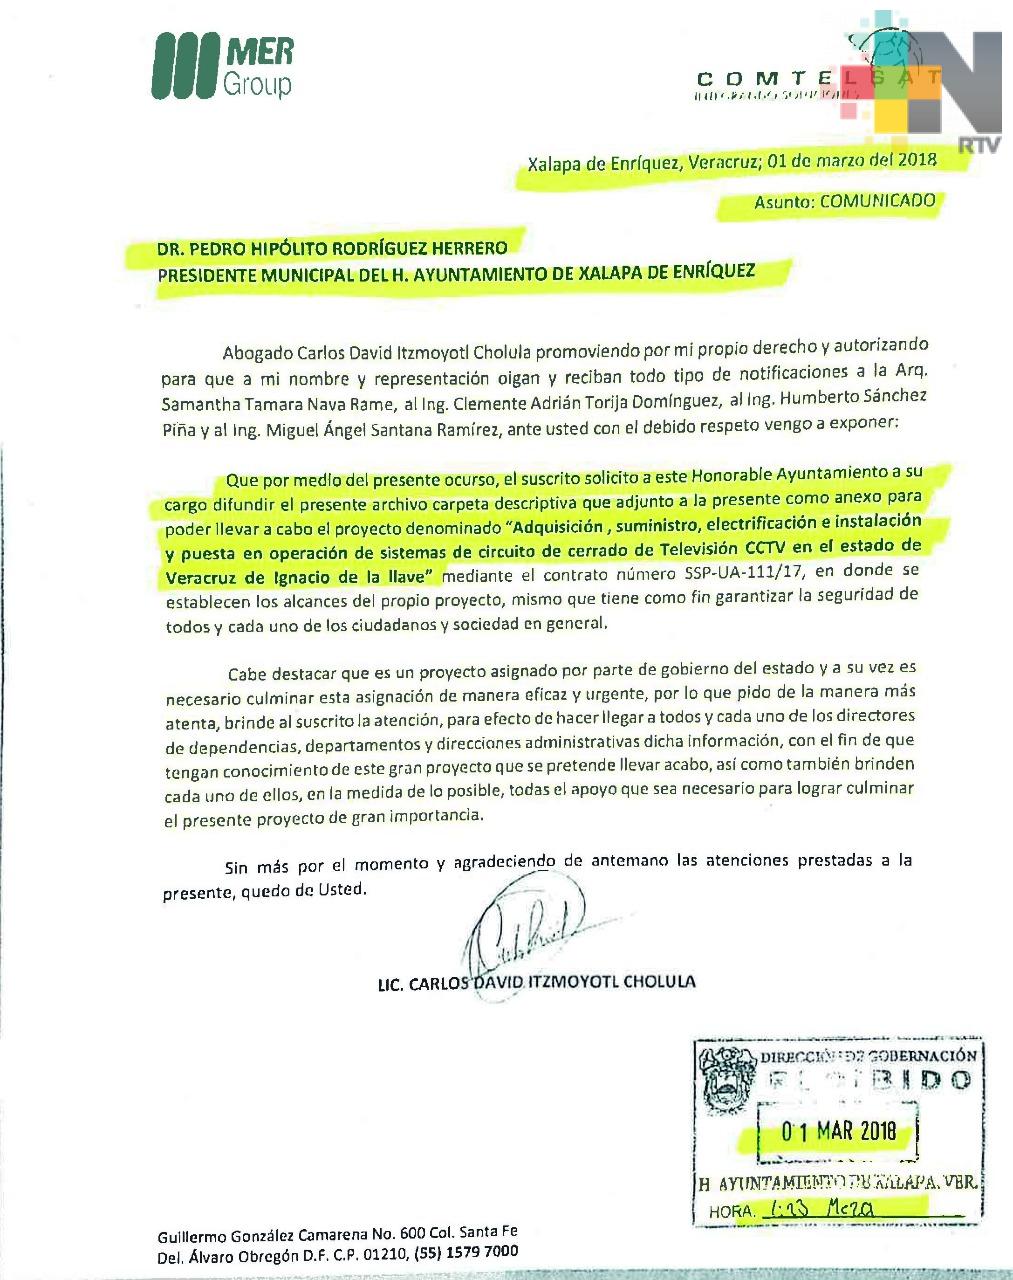 Empresa sí solicitó permisos al ayuntamiento de Xalapa para instalación de cámaras de vigilancia